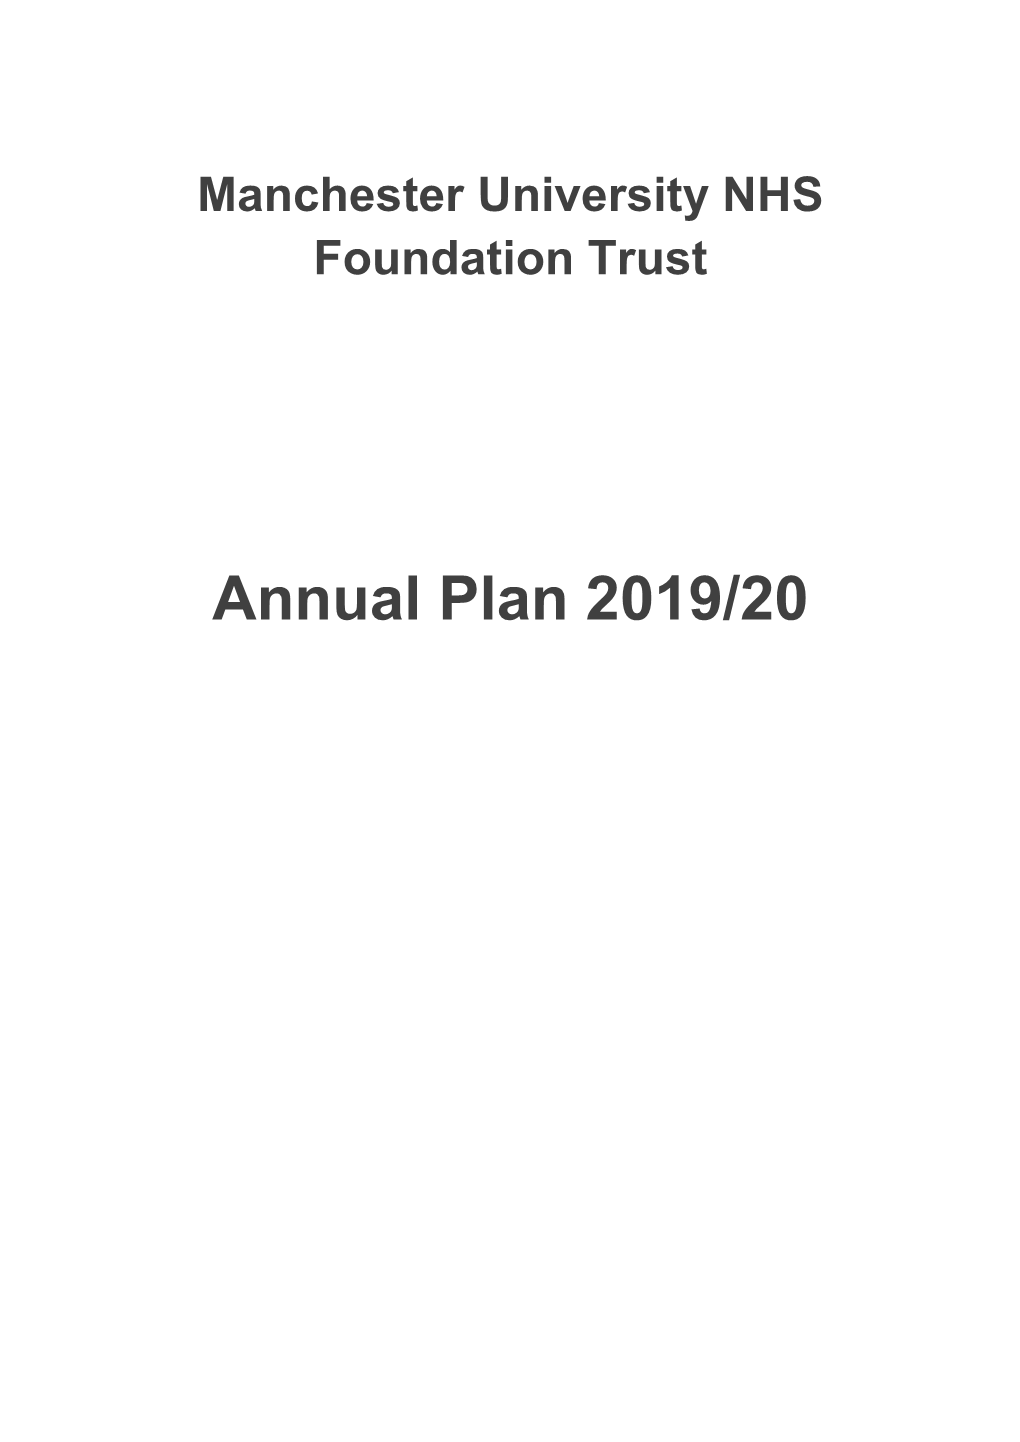 Annual Plan 2019/20